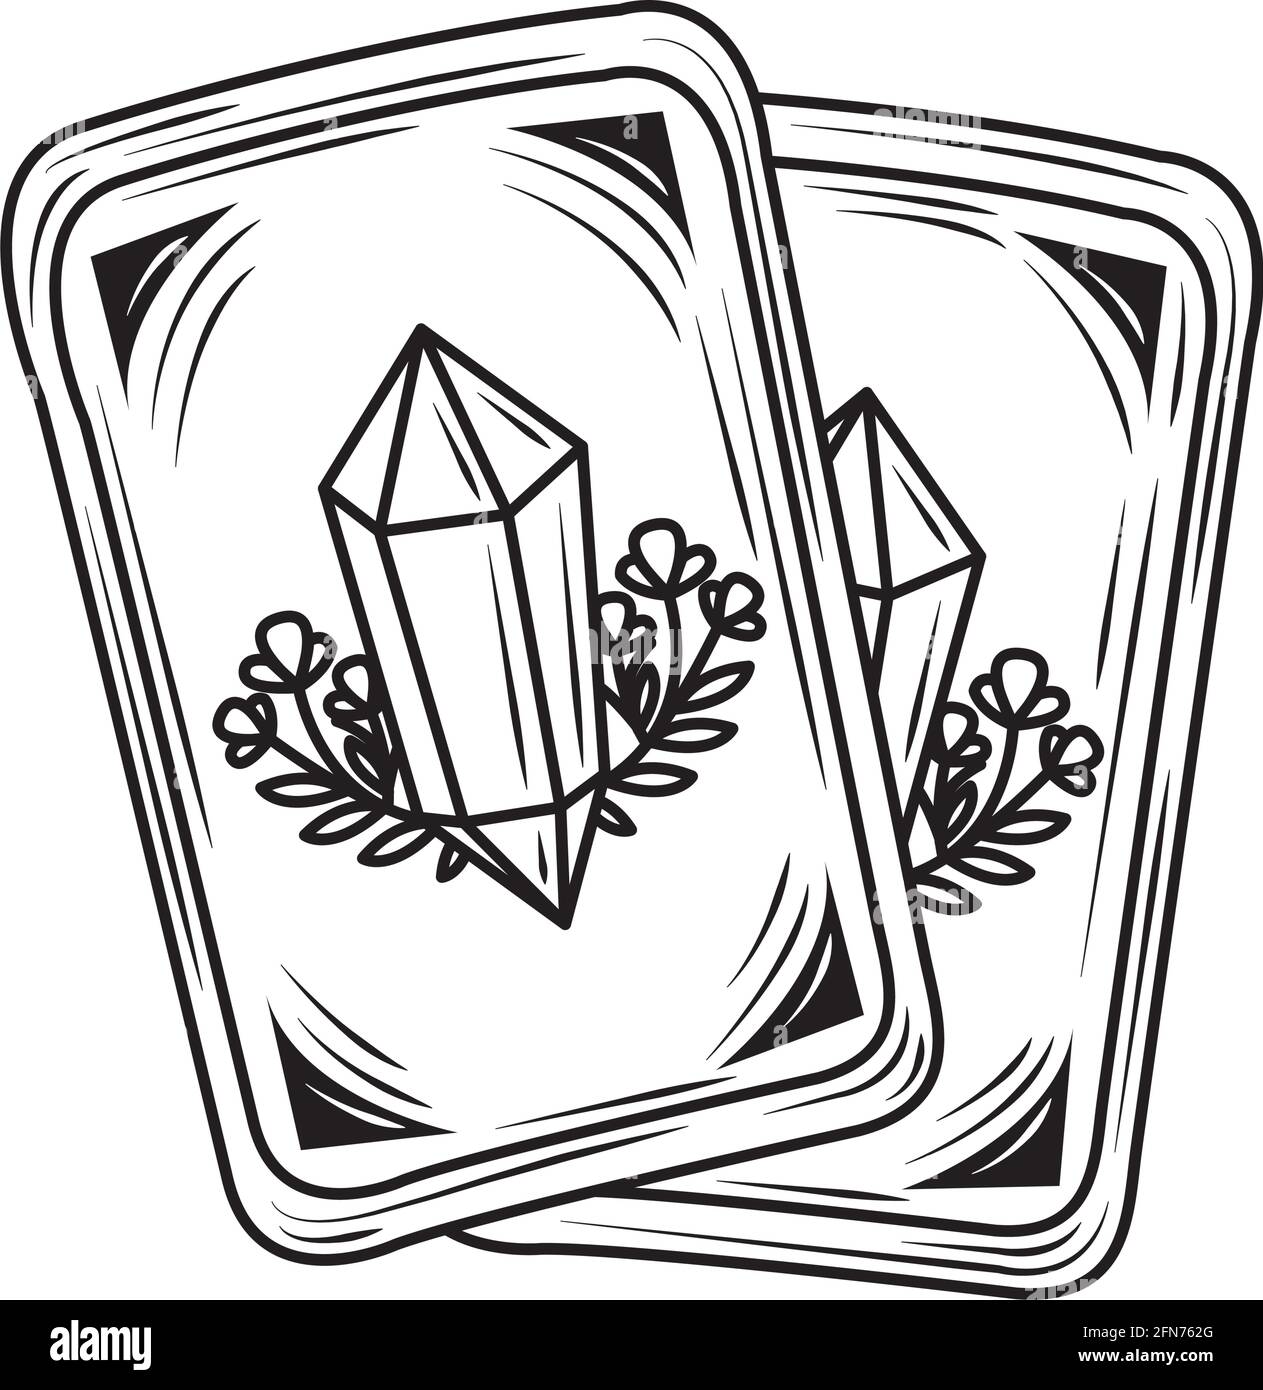 magical tarot cards Stock Vector Image & Art - Alamy